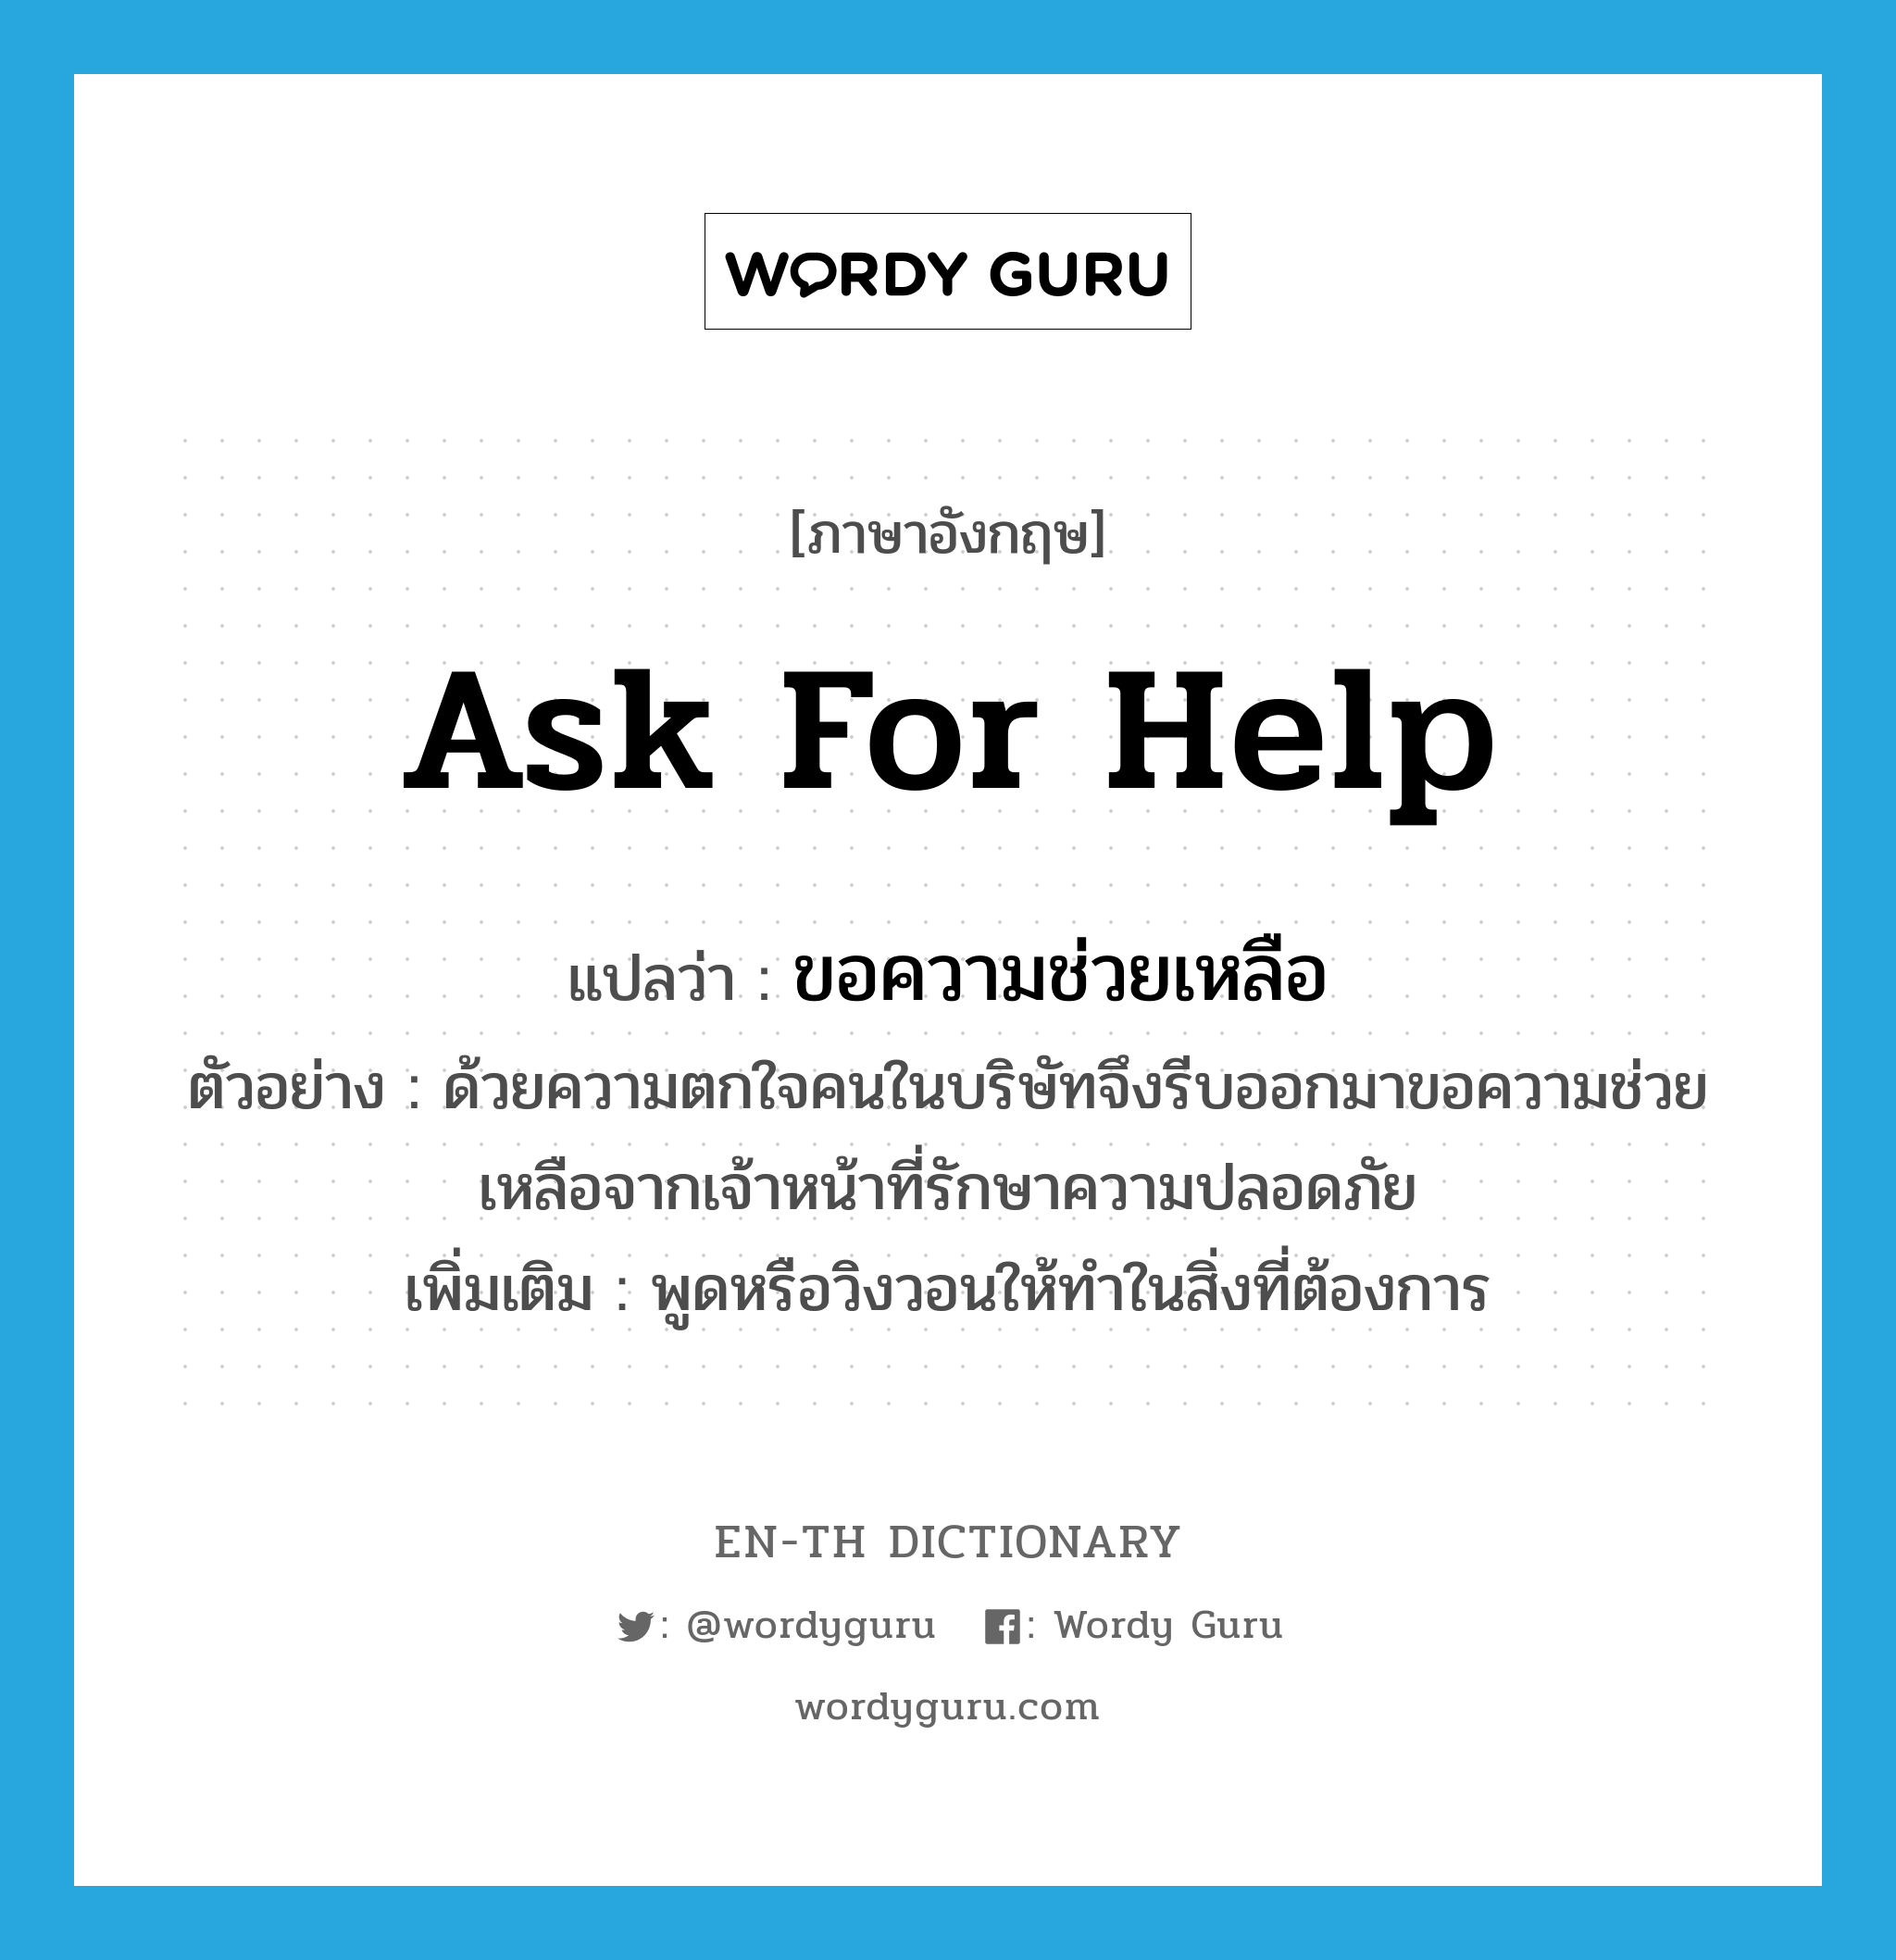 ask for help แปลว่า?, คำศัพท์ภาษาอังกฤษ ask for help แปลว่า ขอความช่วยเหลือ ประเภท V ตัวอย่าง ด้วยความตกใจคนในบริษัทจึงรีบออกมาขอความช่วยเหลือจากเจ้าหน้าที่รักษาความปลอดภัย เพิ่มเติม พูดหรือวิงวอนให้ทำในสิ่งที่ต้องการ หมวด V